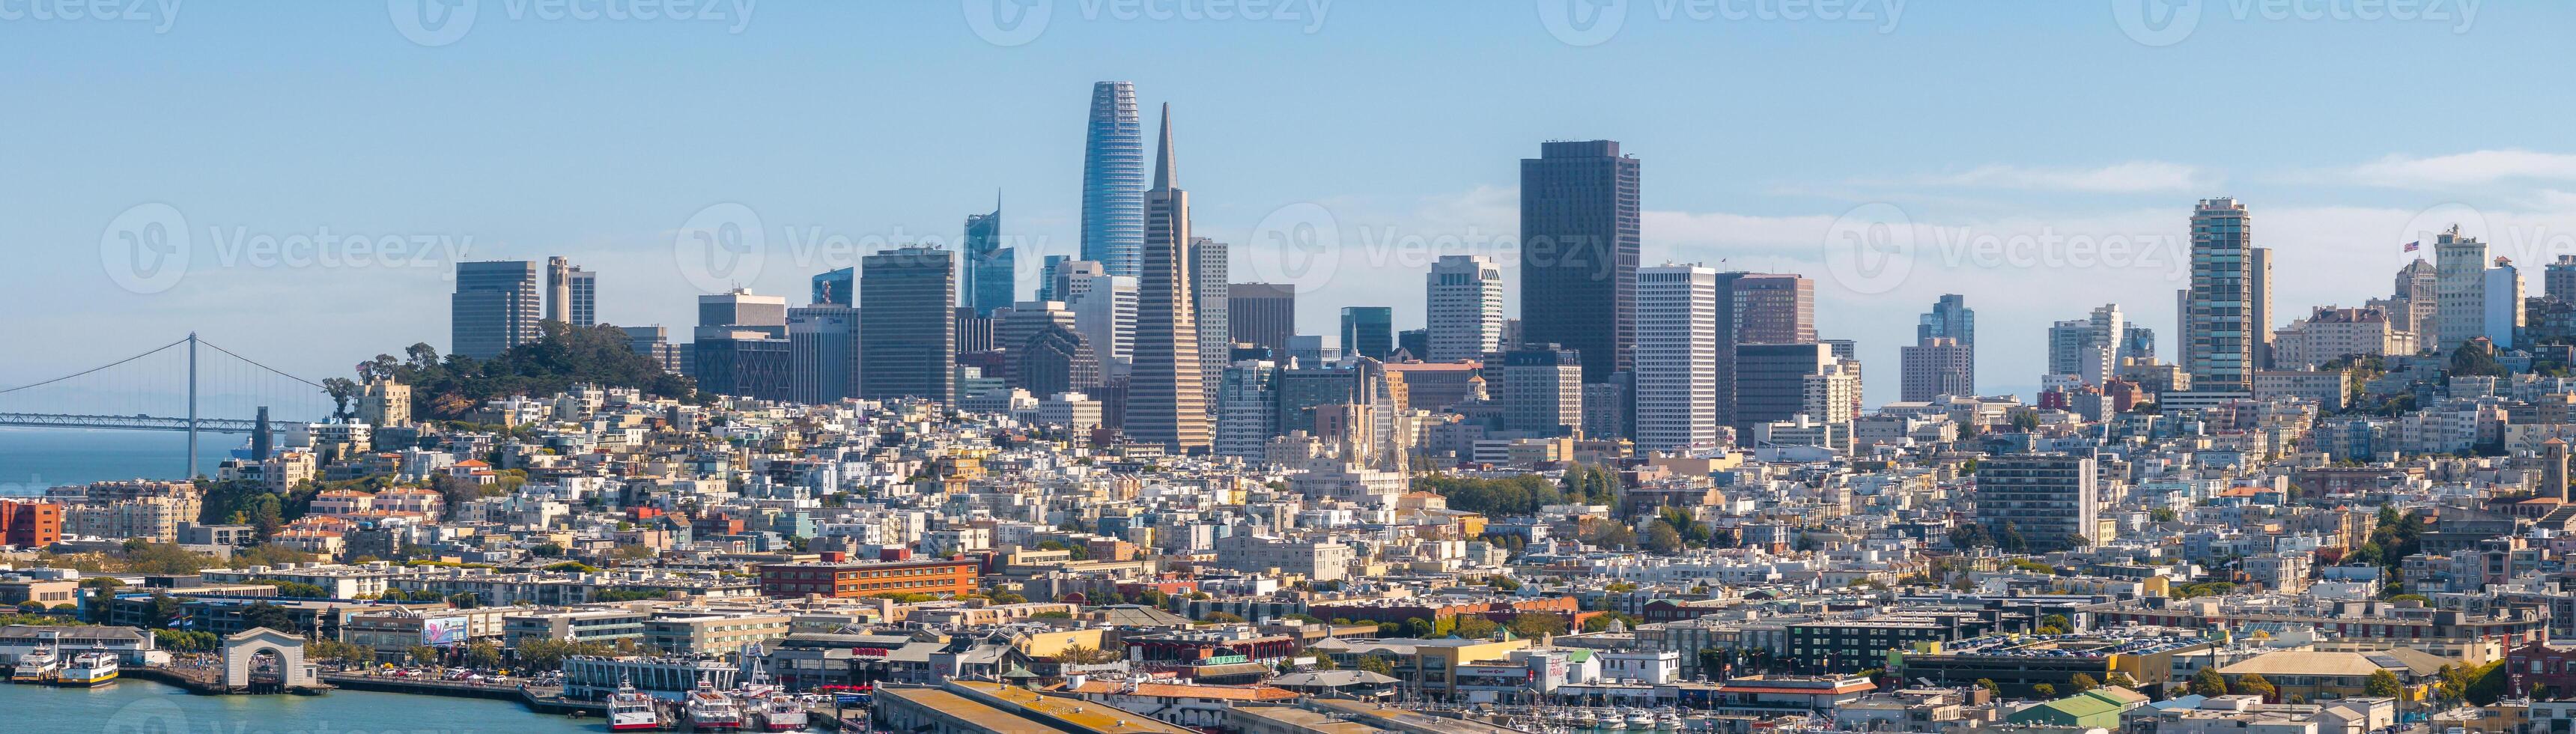 aereo Visualizza di il san Francisco centro. foto